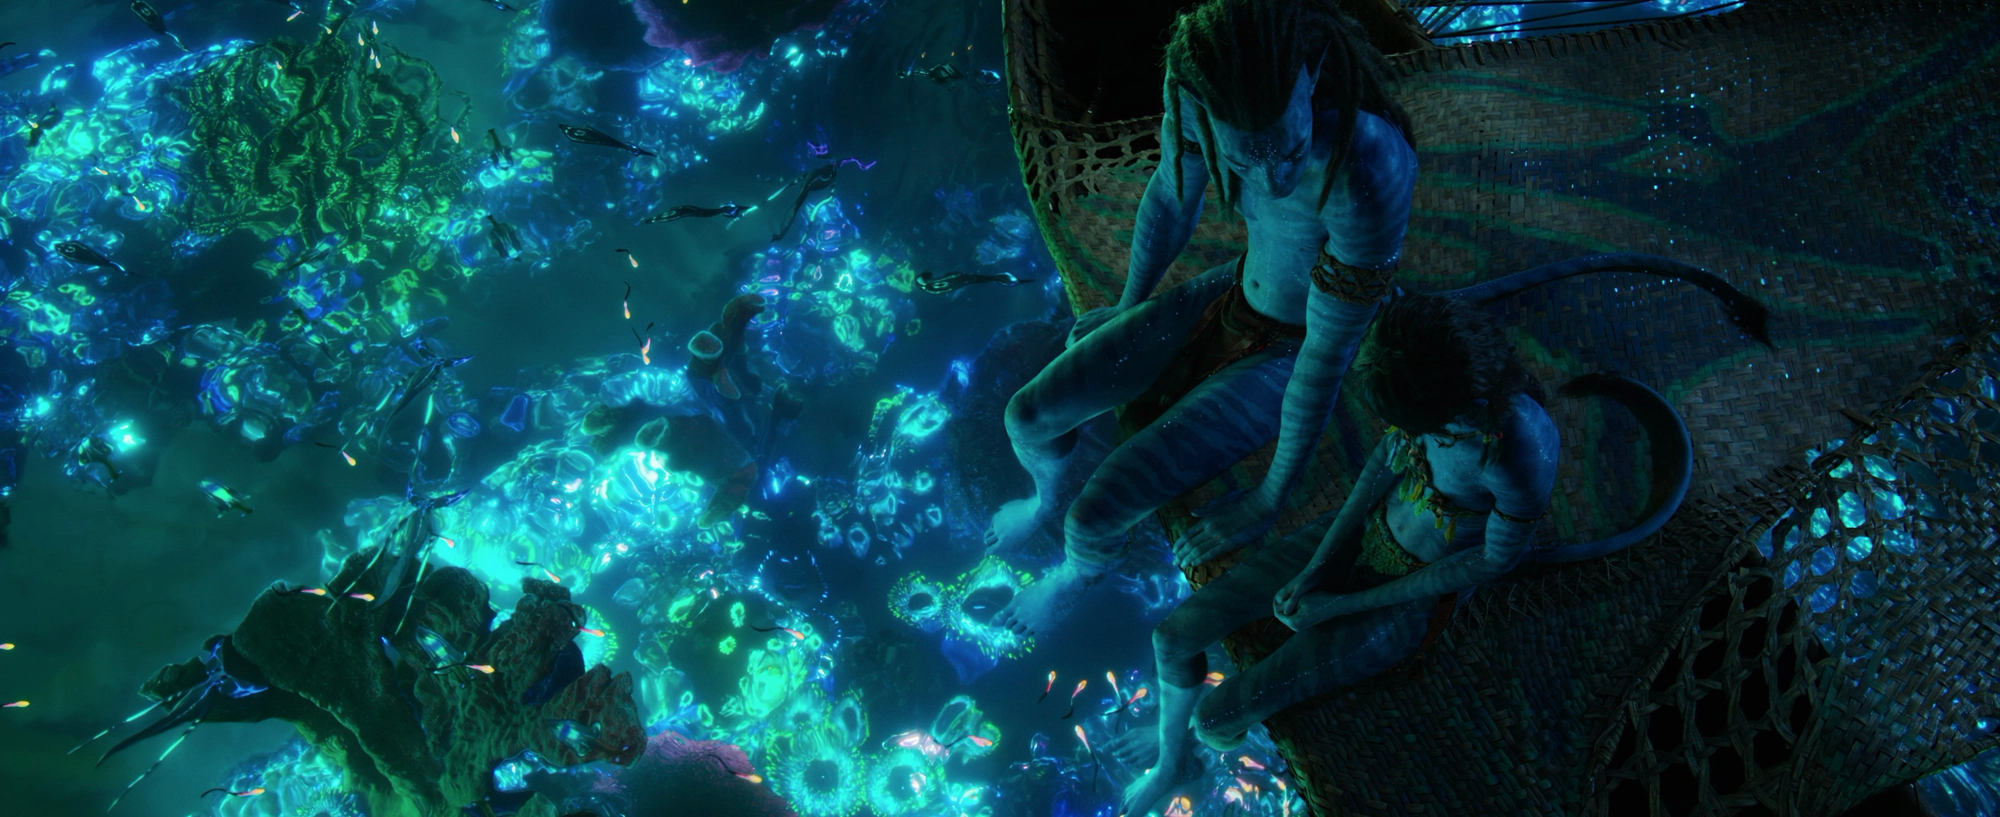 Avatar: The Way Of Water đích thị là kỳ quan thế giới chứ không đơn thuần là một bộ phim - Ảnh 11.